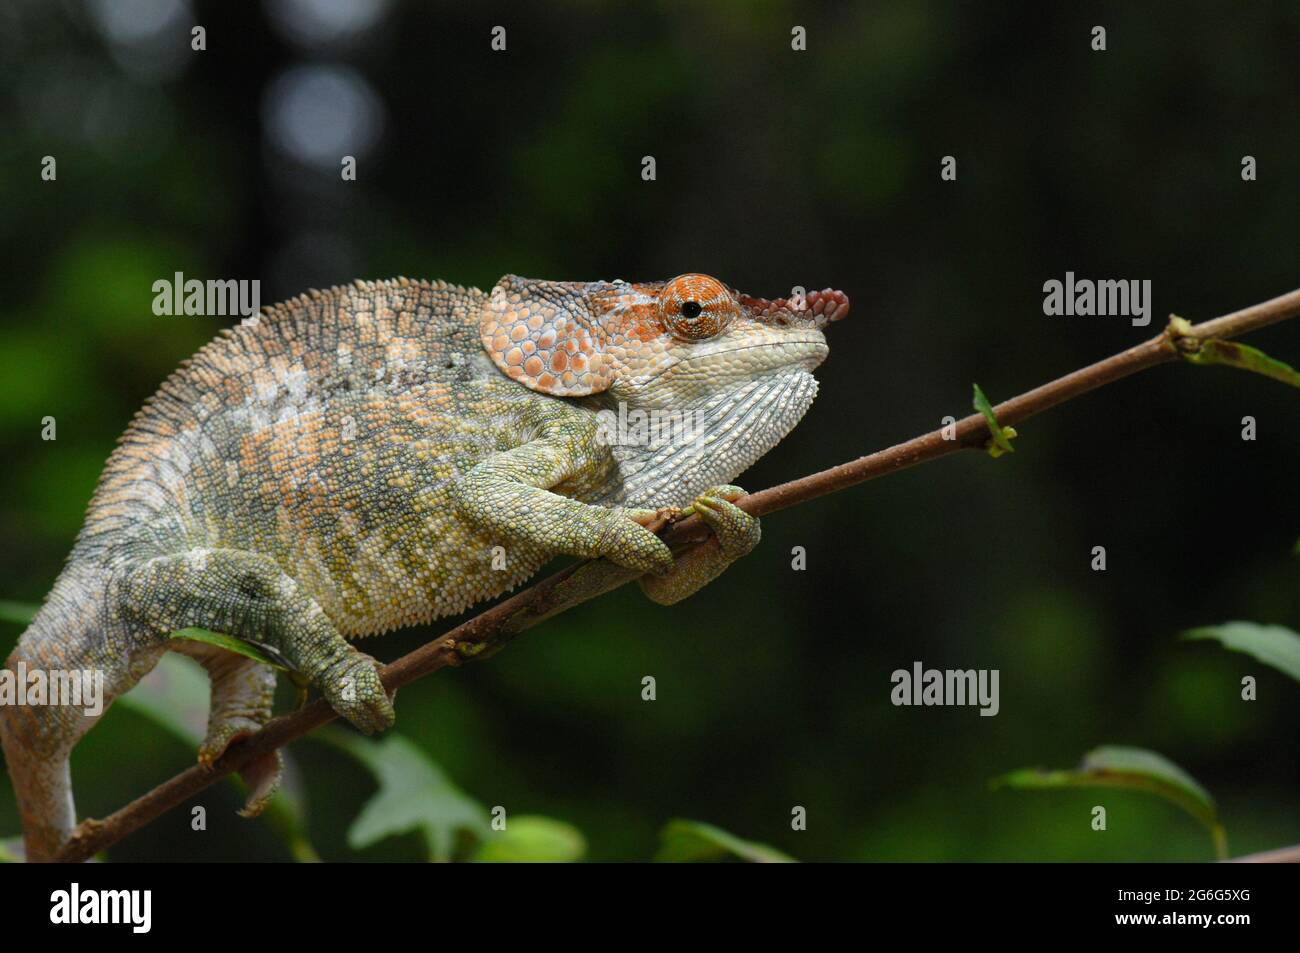 Short-horned chameleon (Calumma brevicorne), on a twig, Madagascar Stock Photo